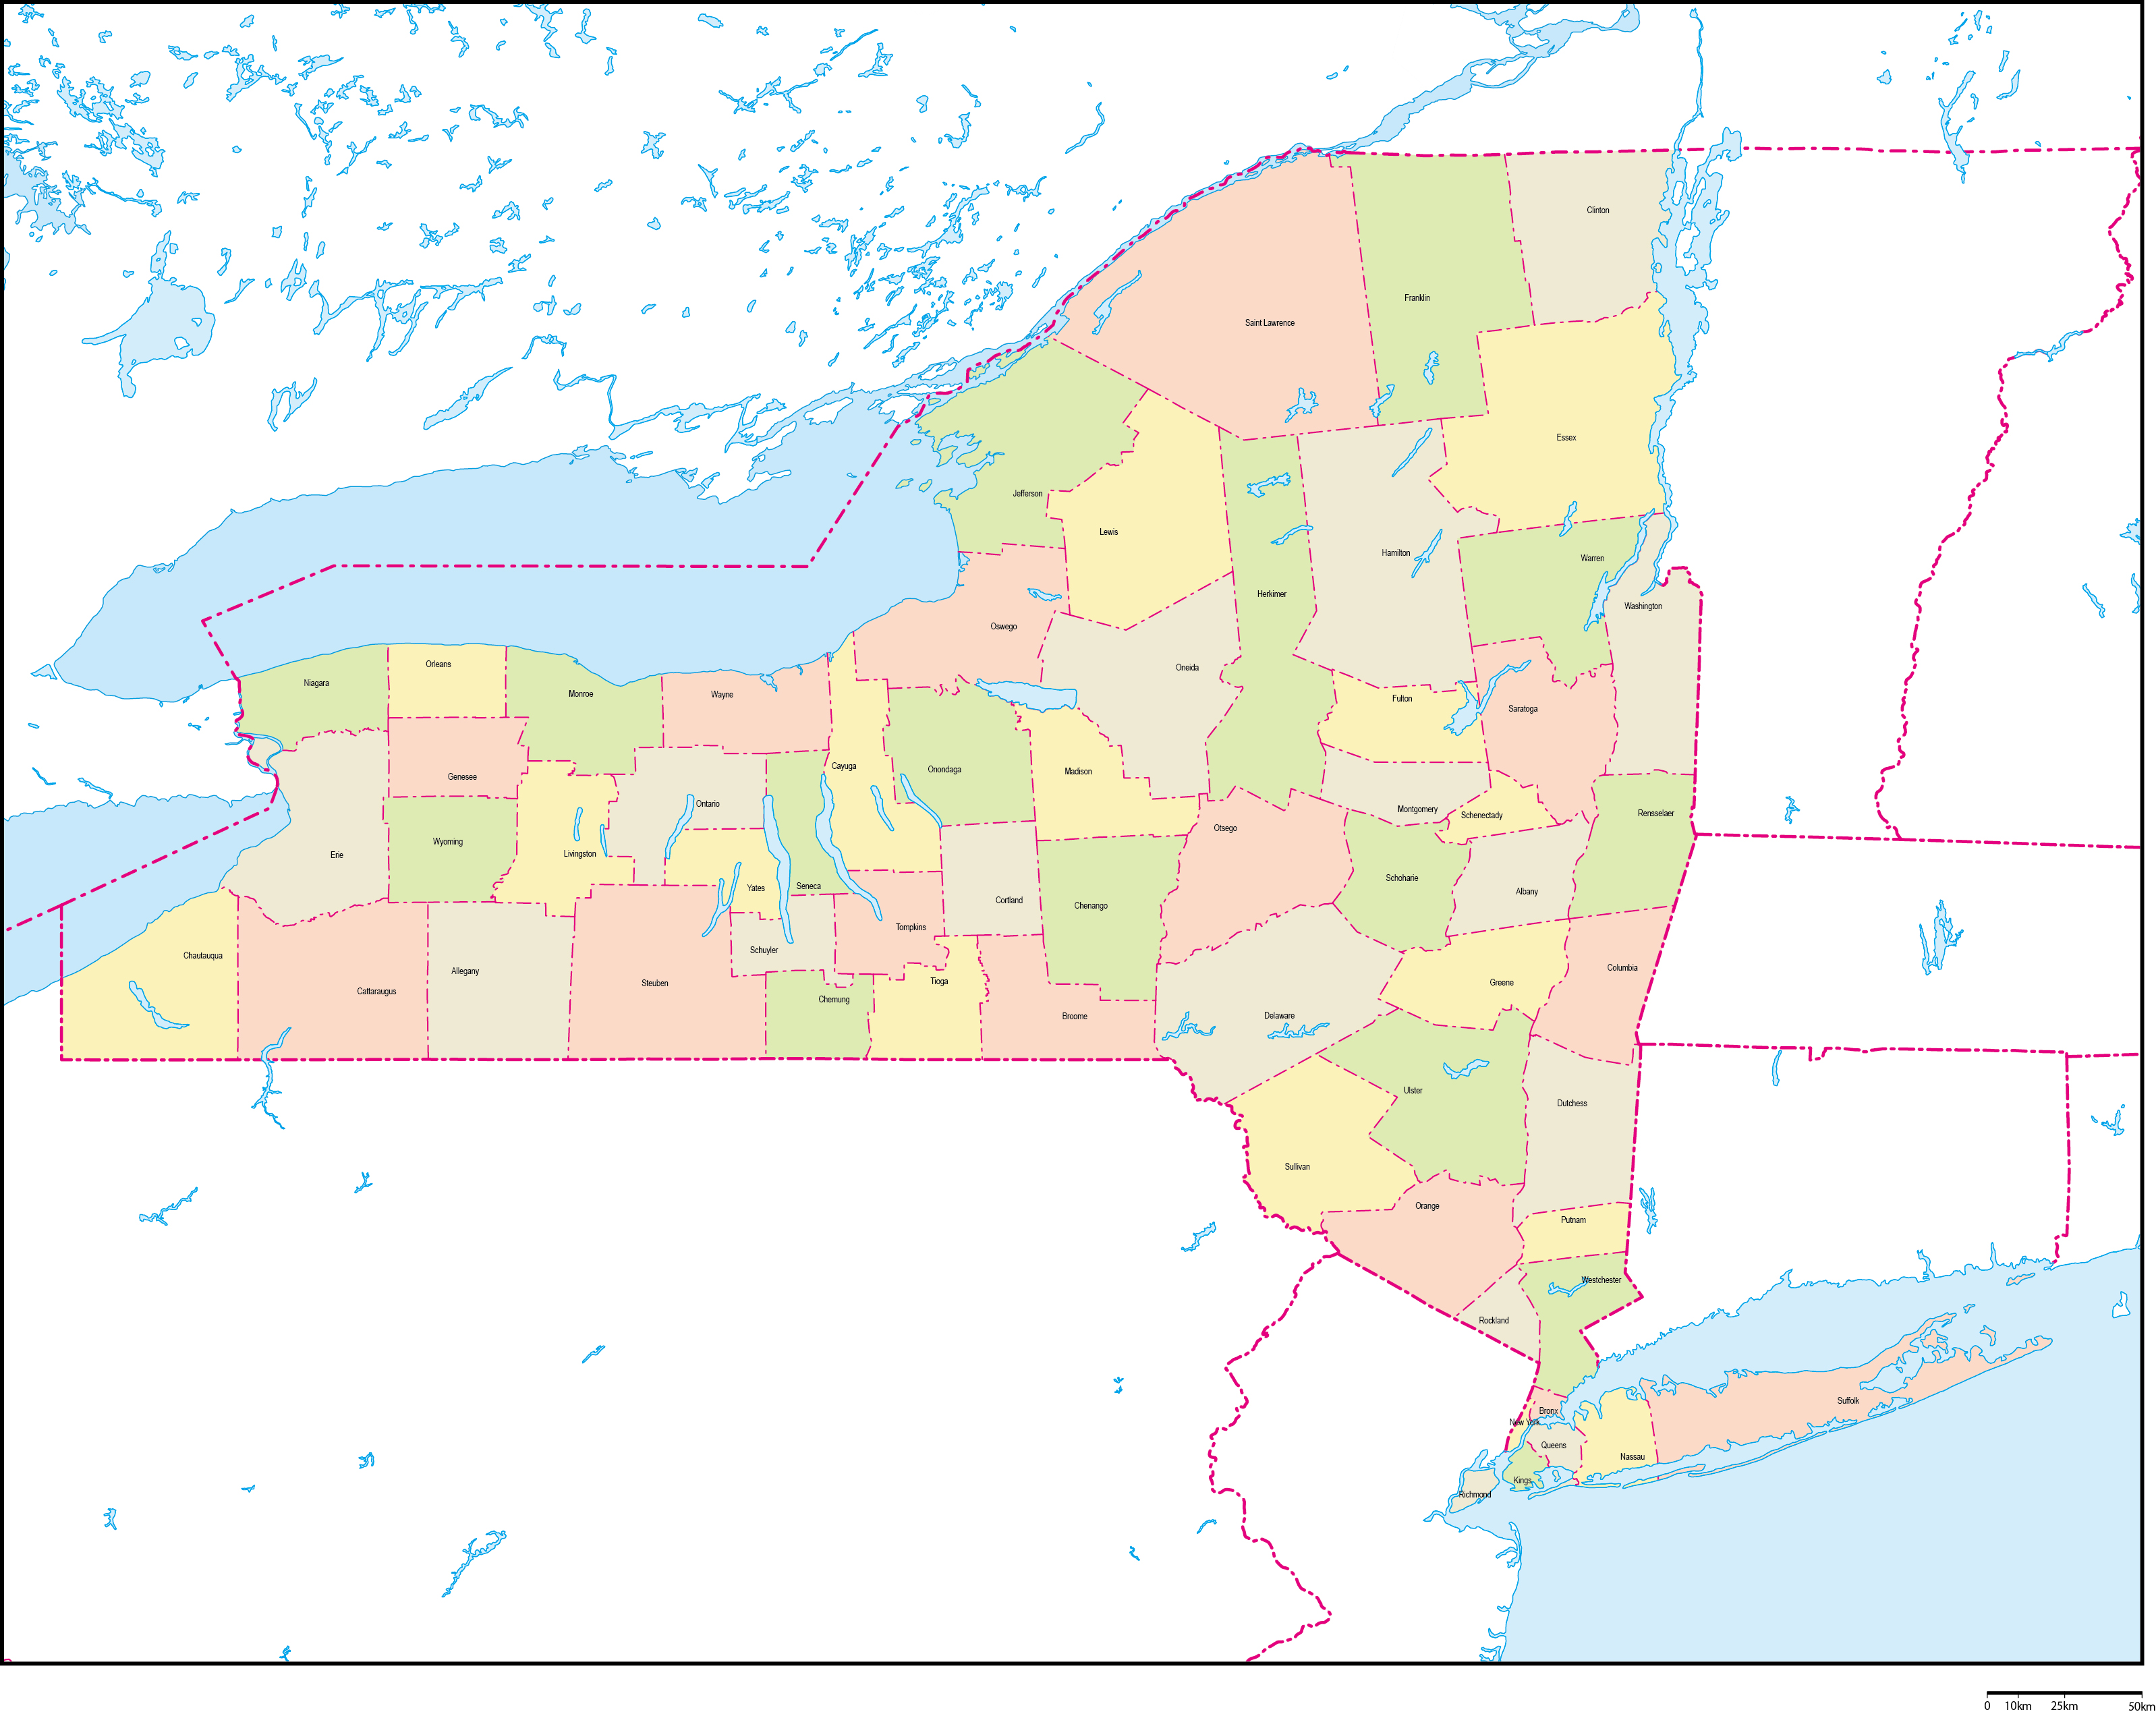 ニューヨーク州郡色分け地図郡名あり(英語)フリーデータの画像